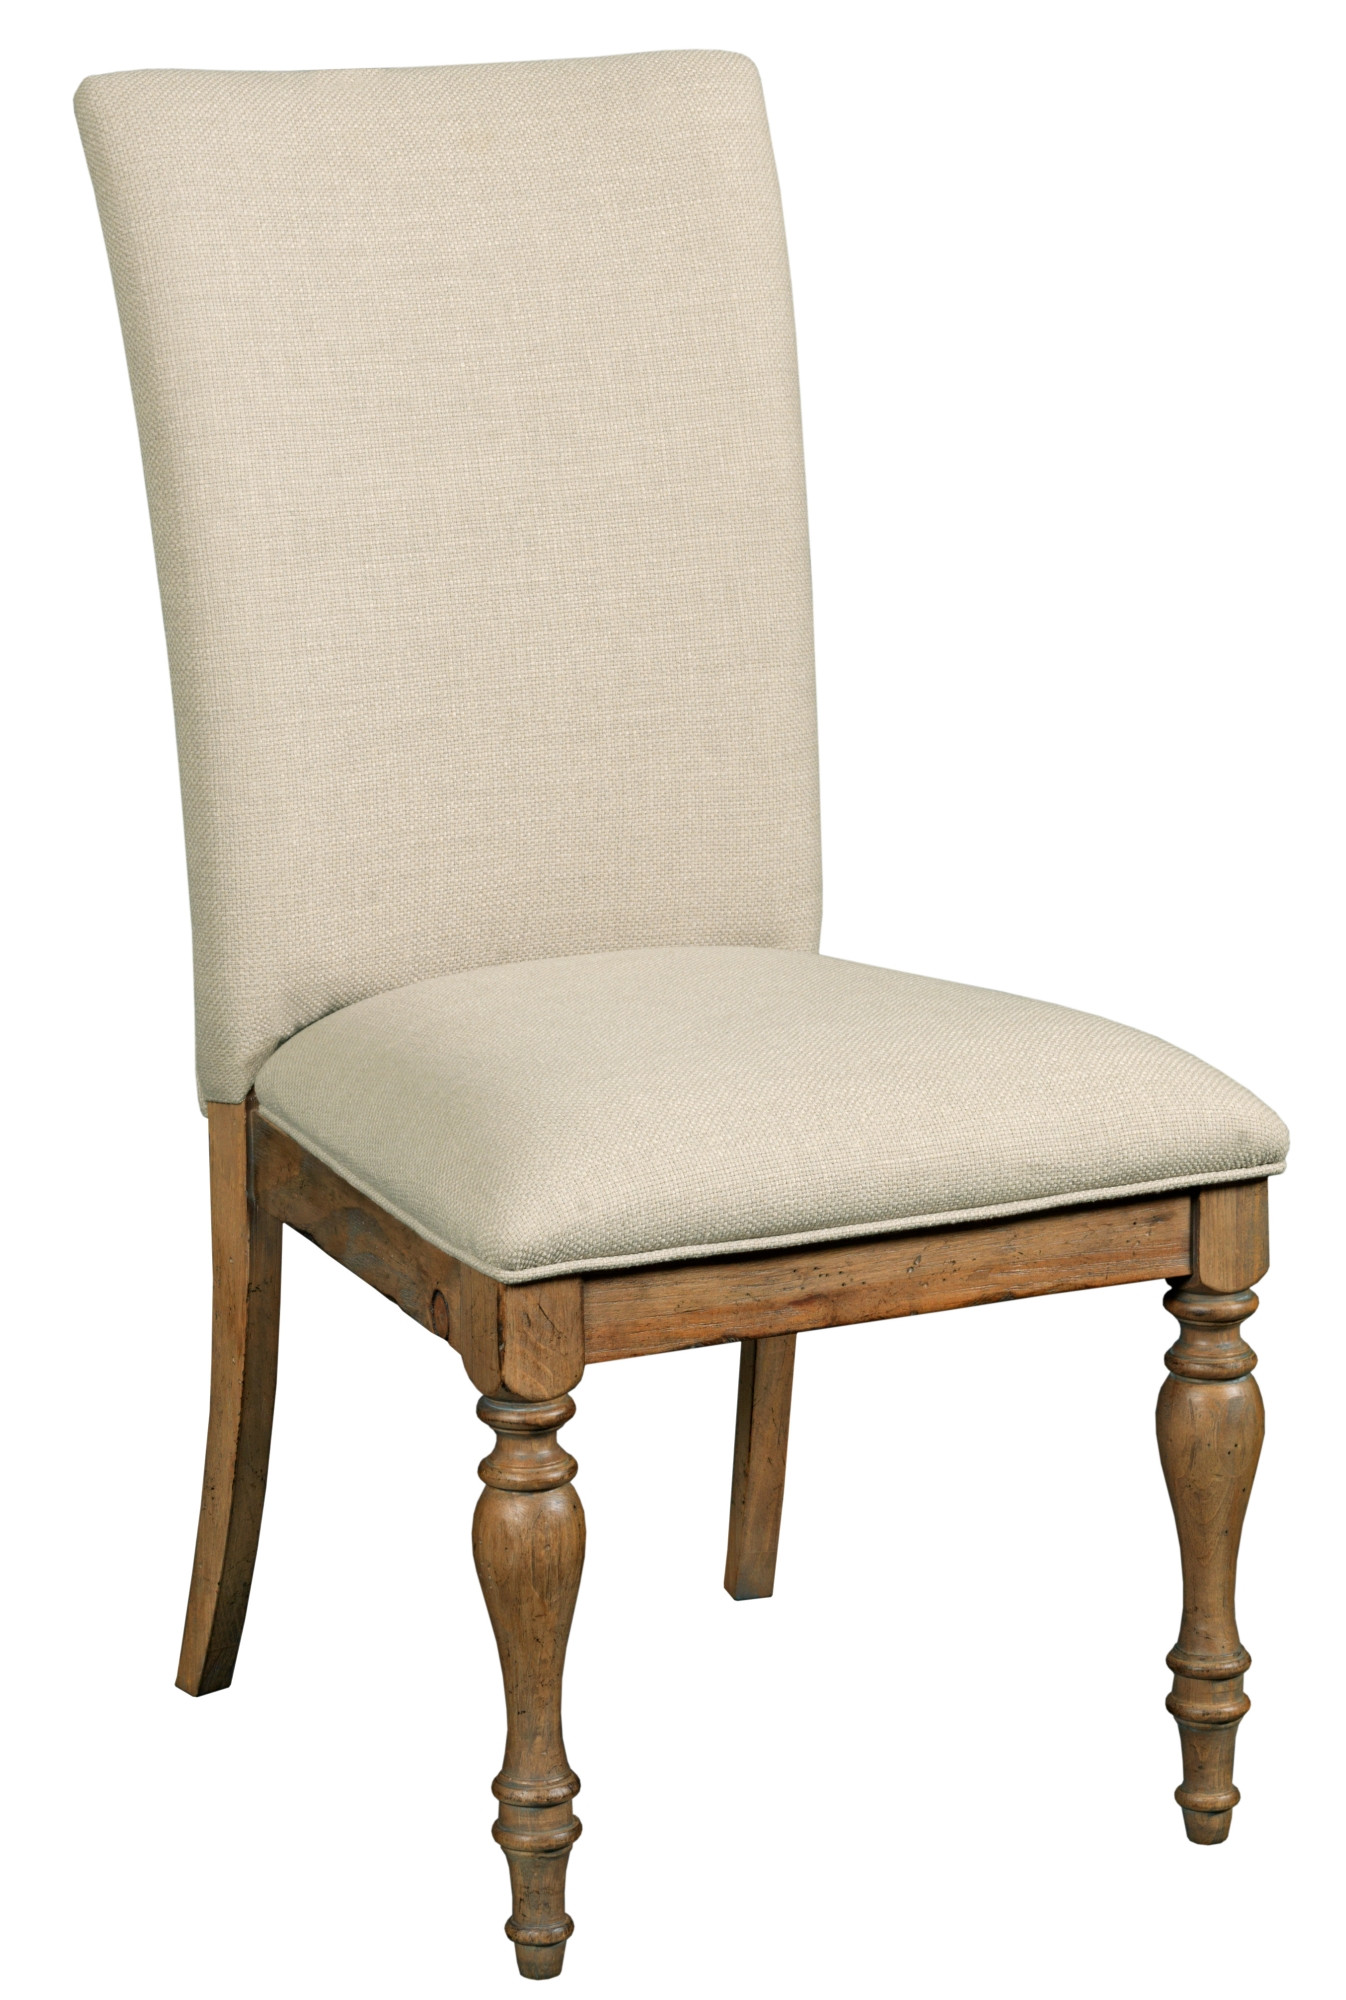 Tasman Upholstered Chair